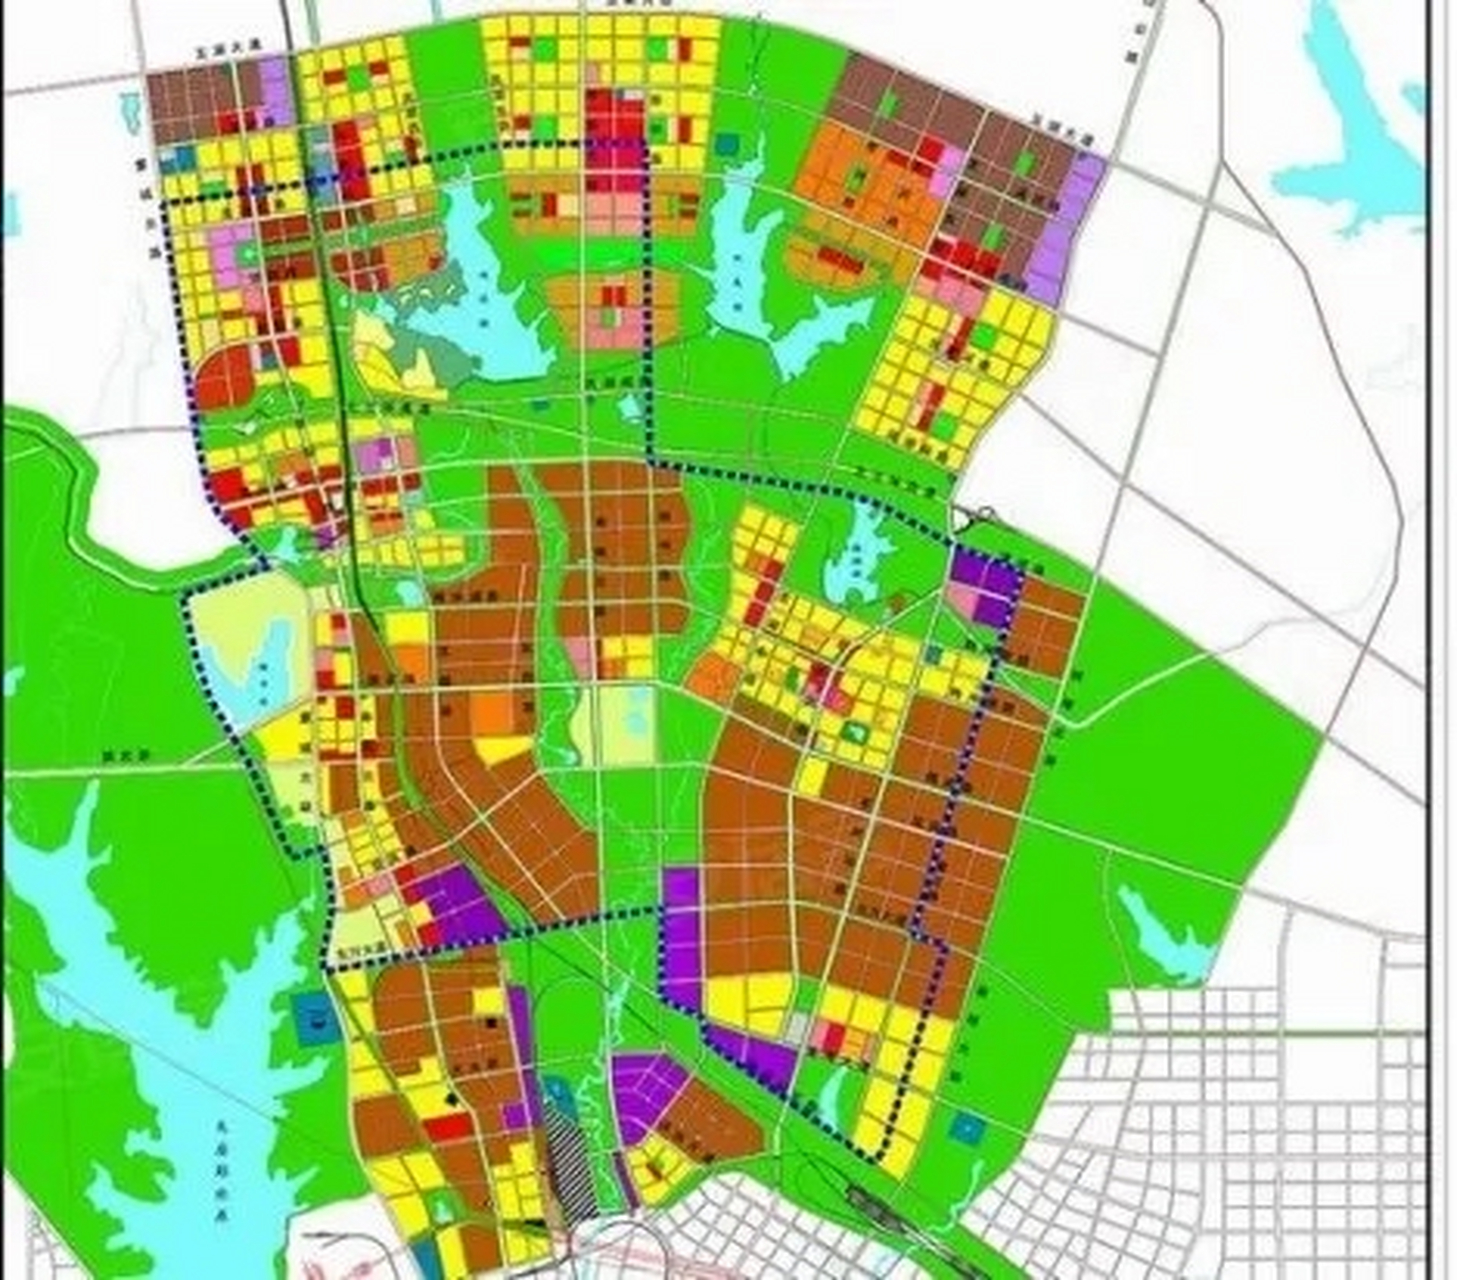 你看看,下面这张图的规划是多么的美好,而且,合肥的领导在发展北城